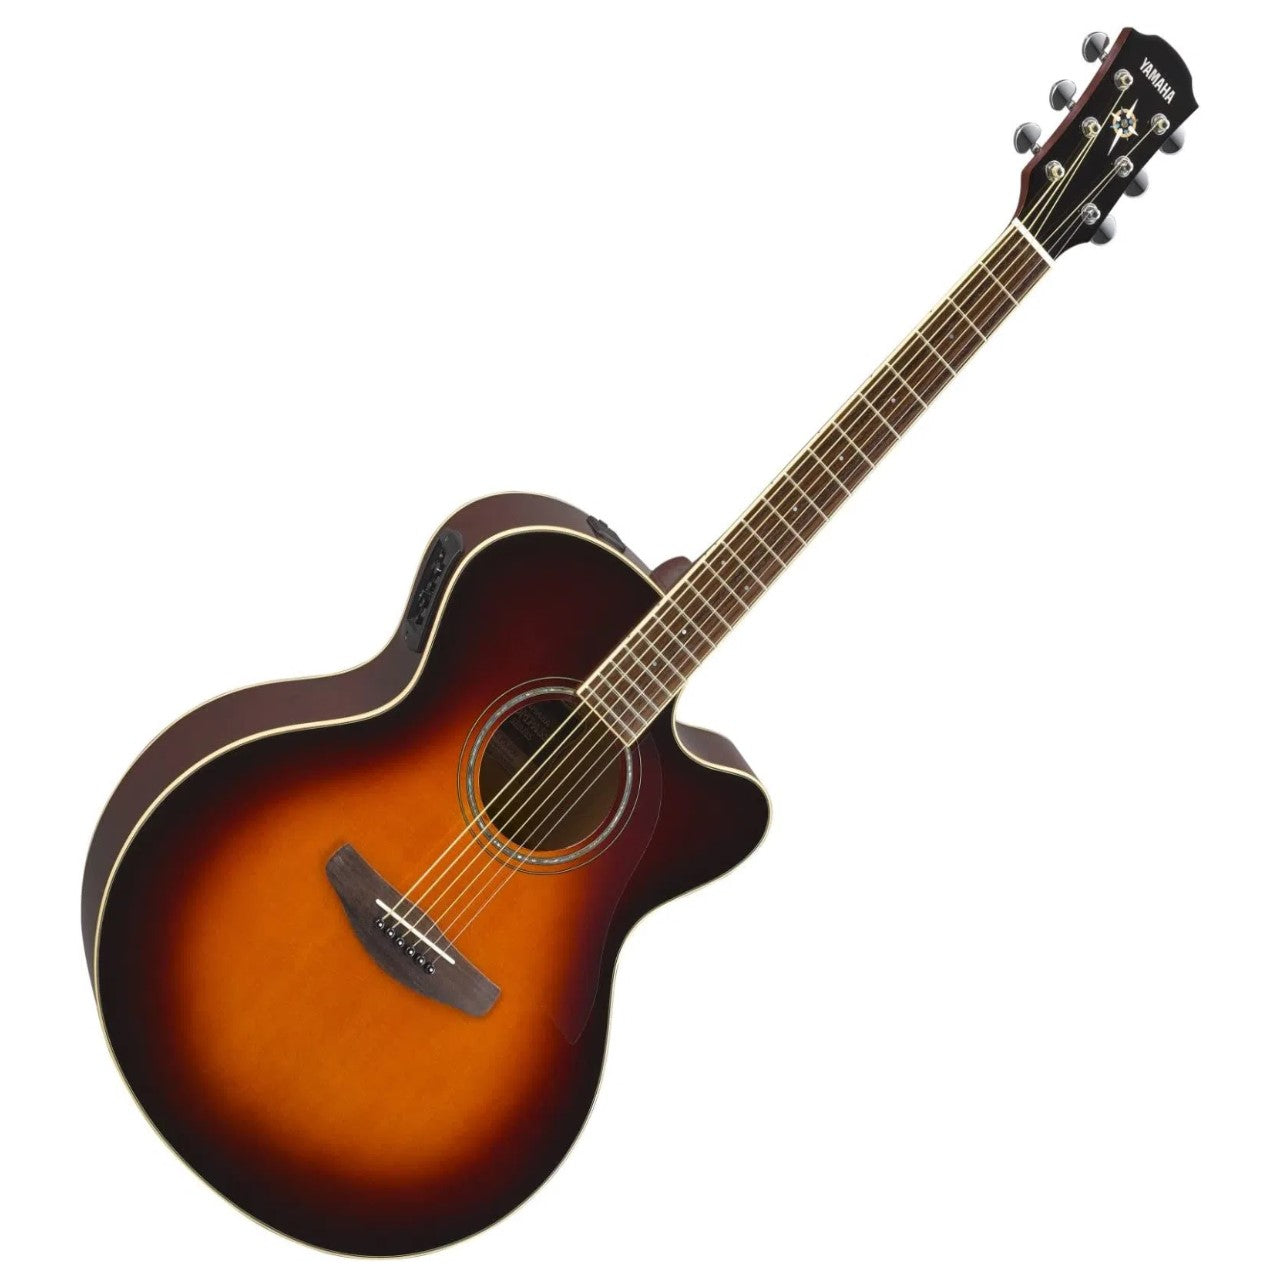 Yamaha Guitarra ElectroAcustica cpx600ovs sunburst